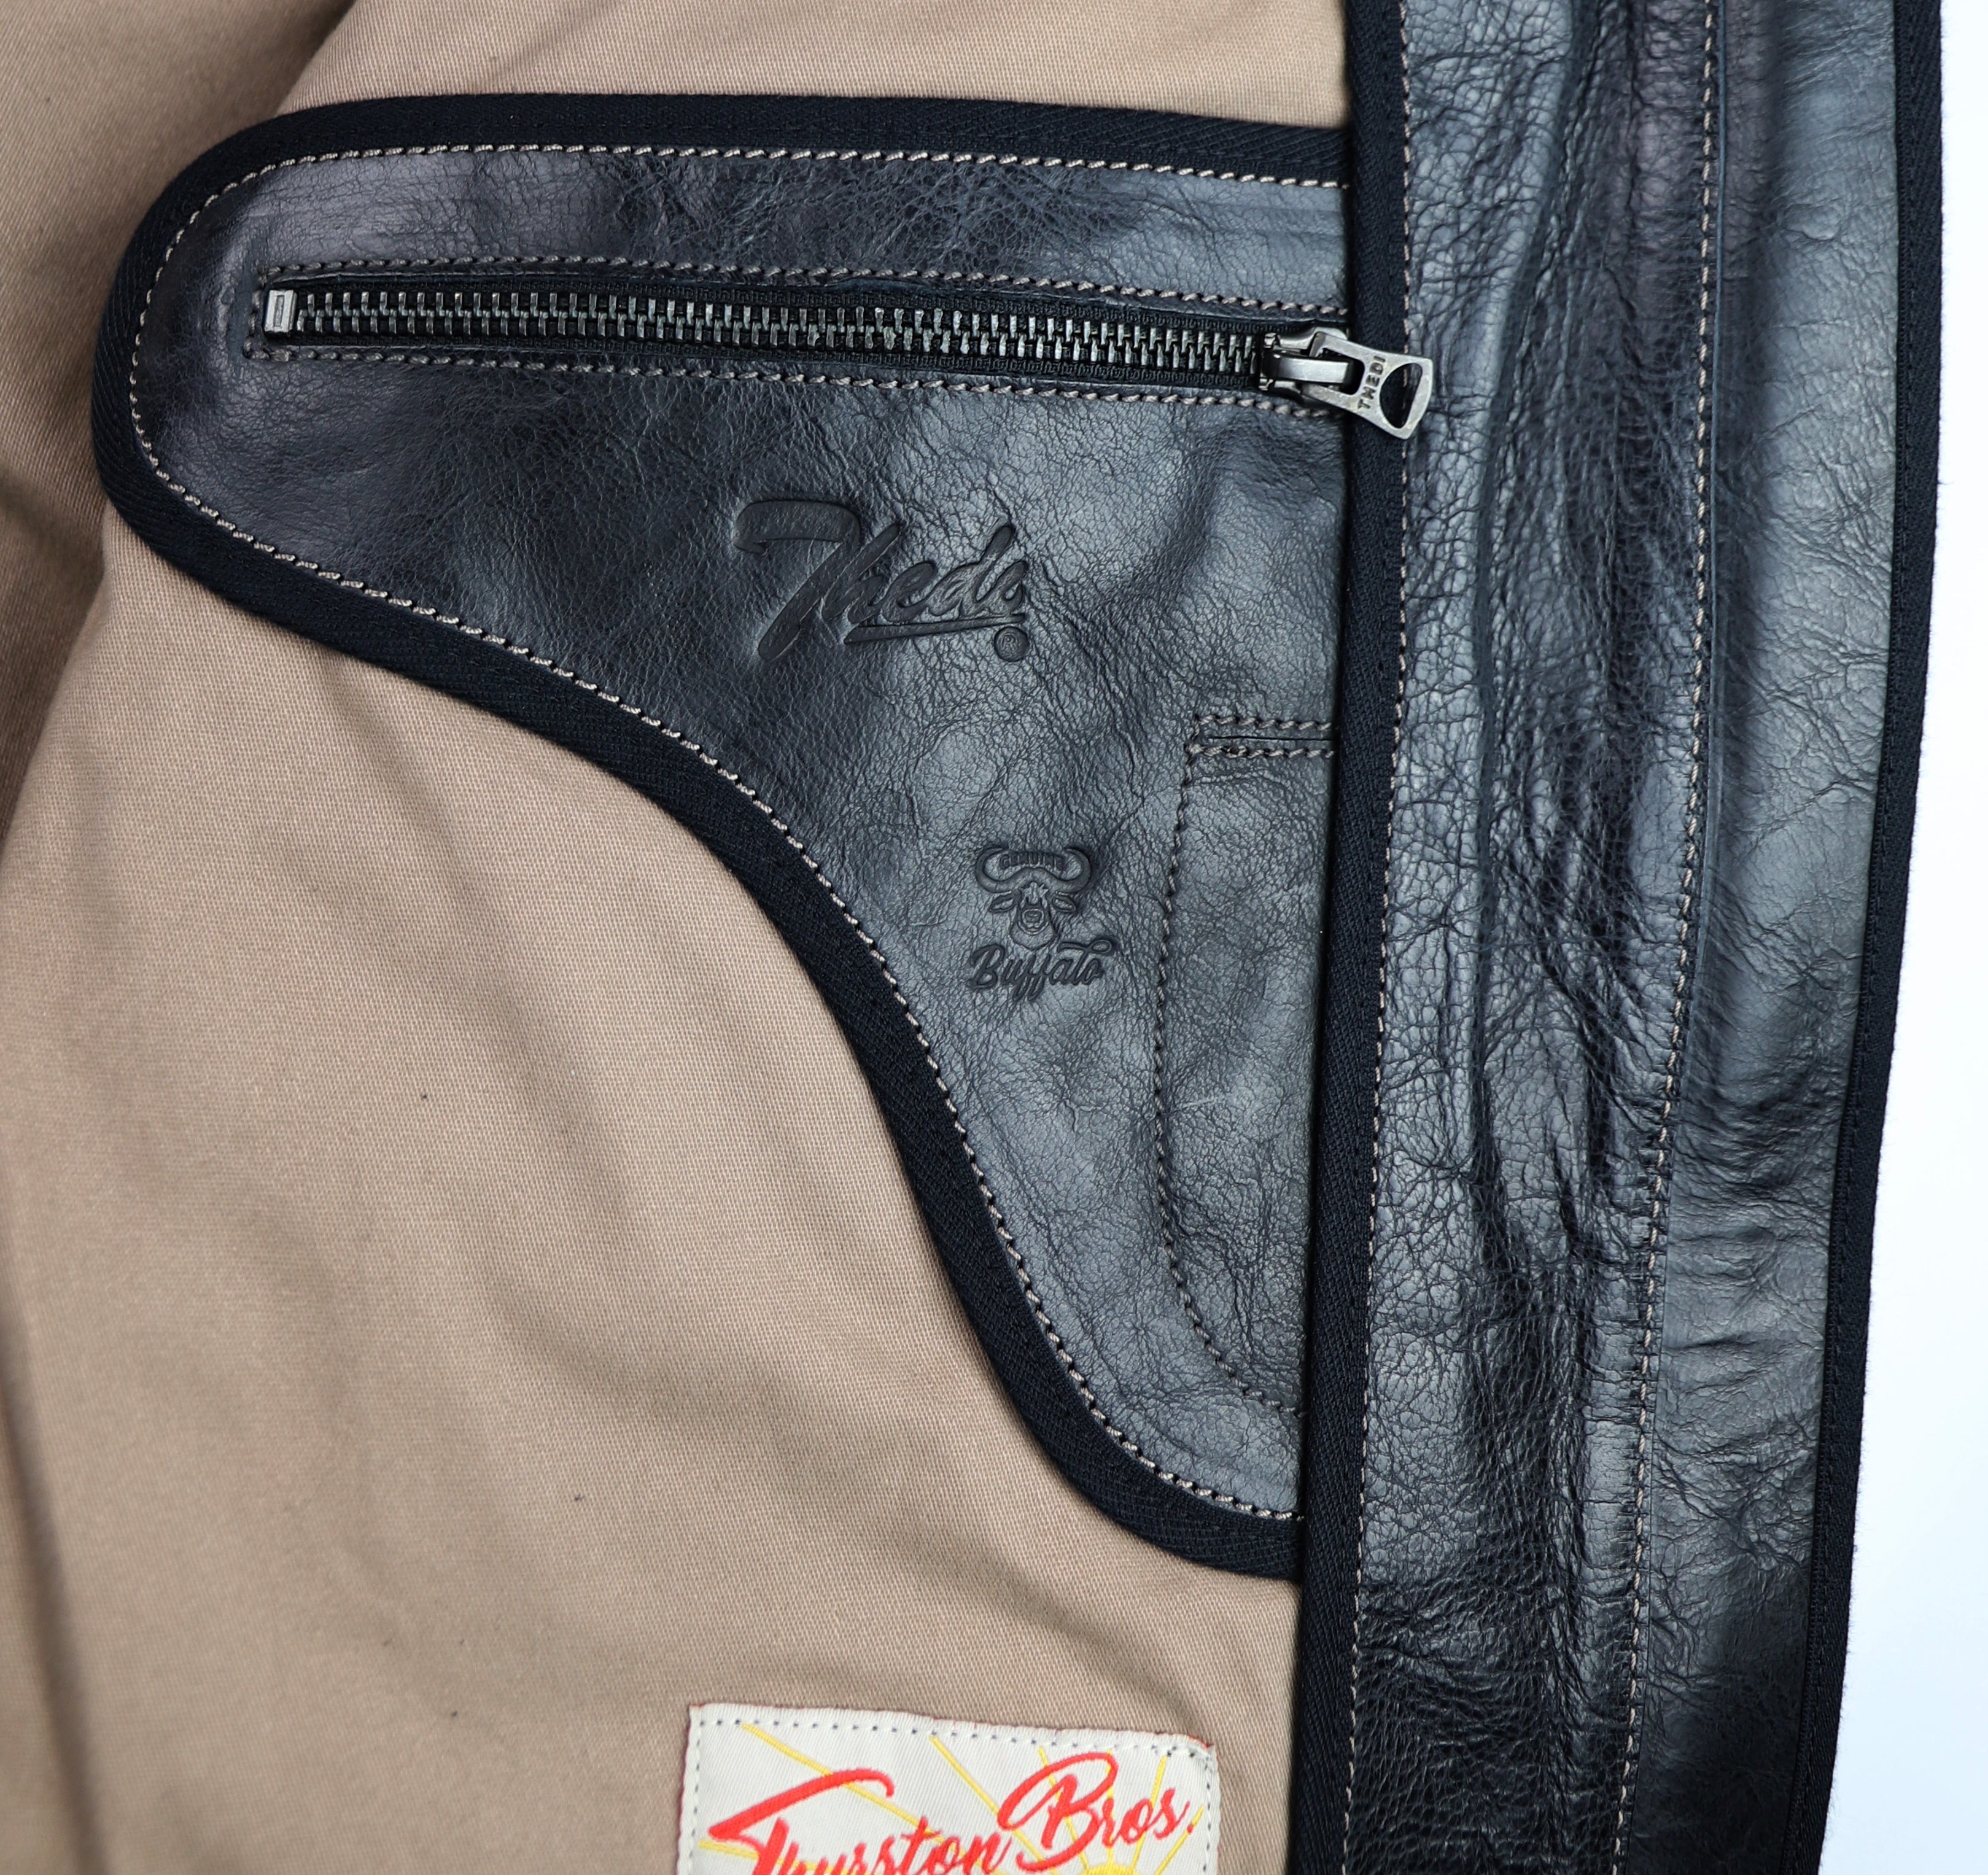 Thedi Phenix Cafe Racer Jacket, size XXL, Black Buffalo